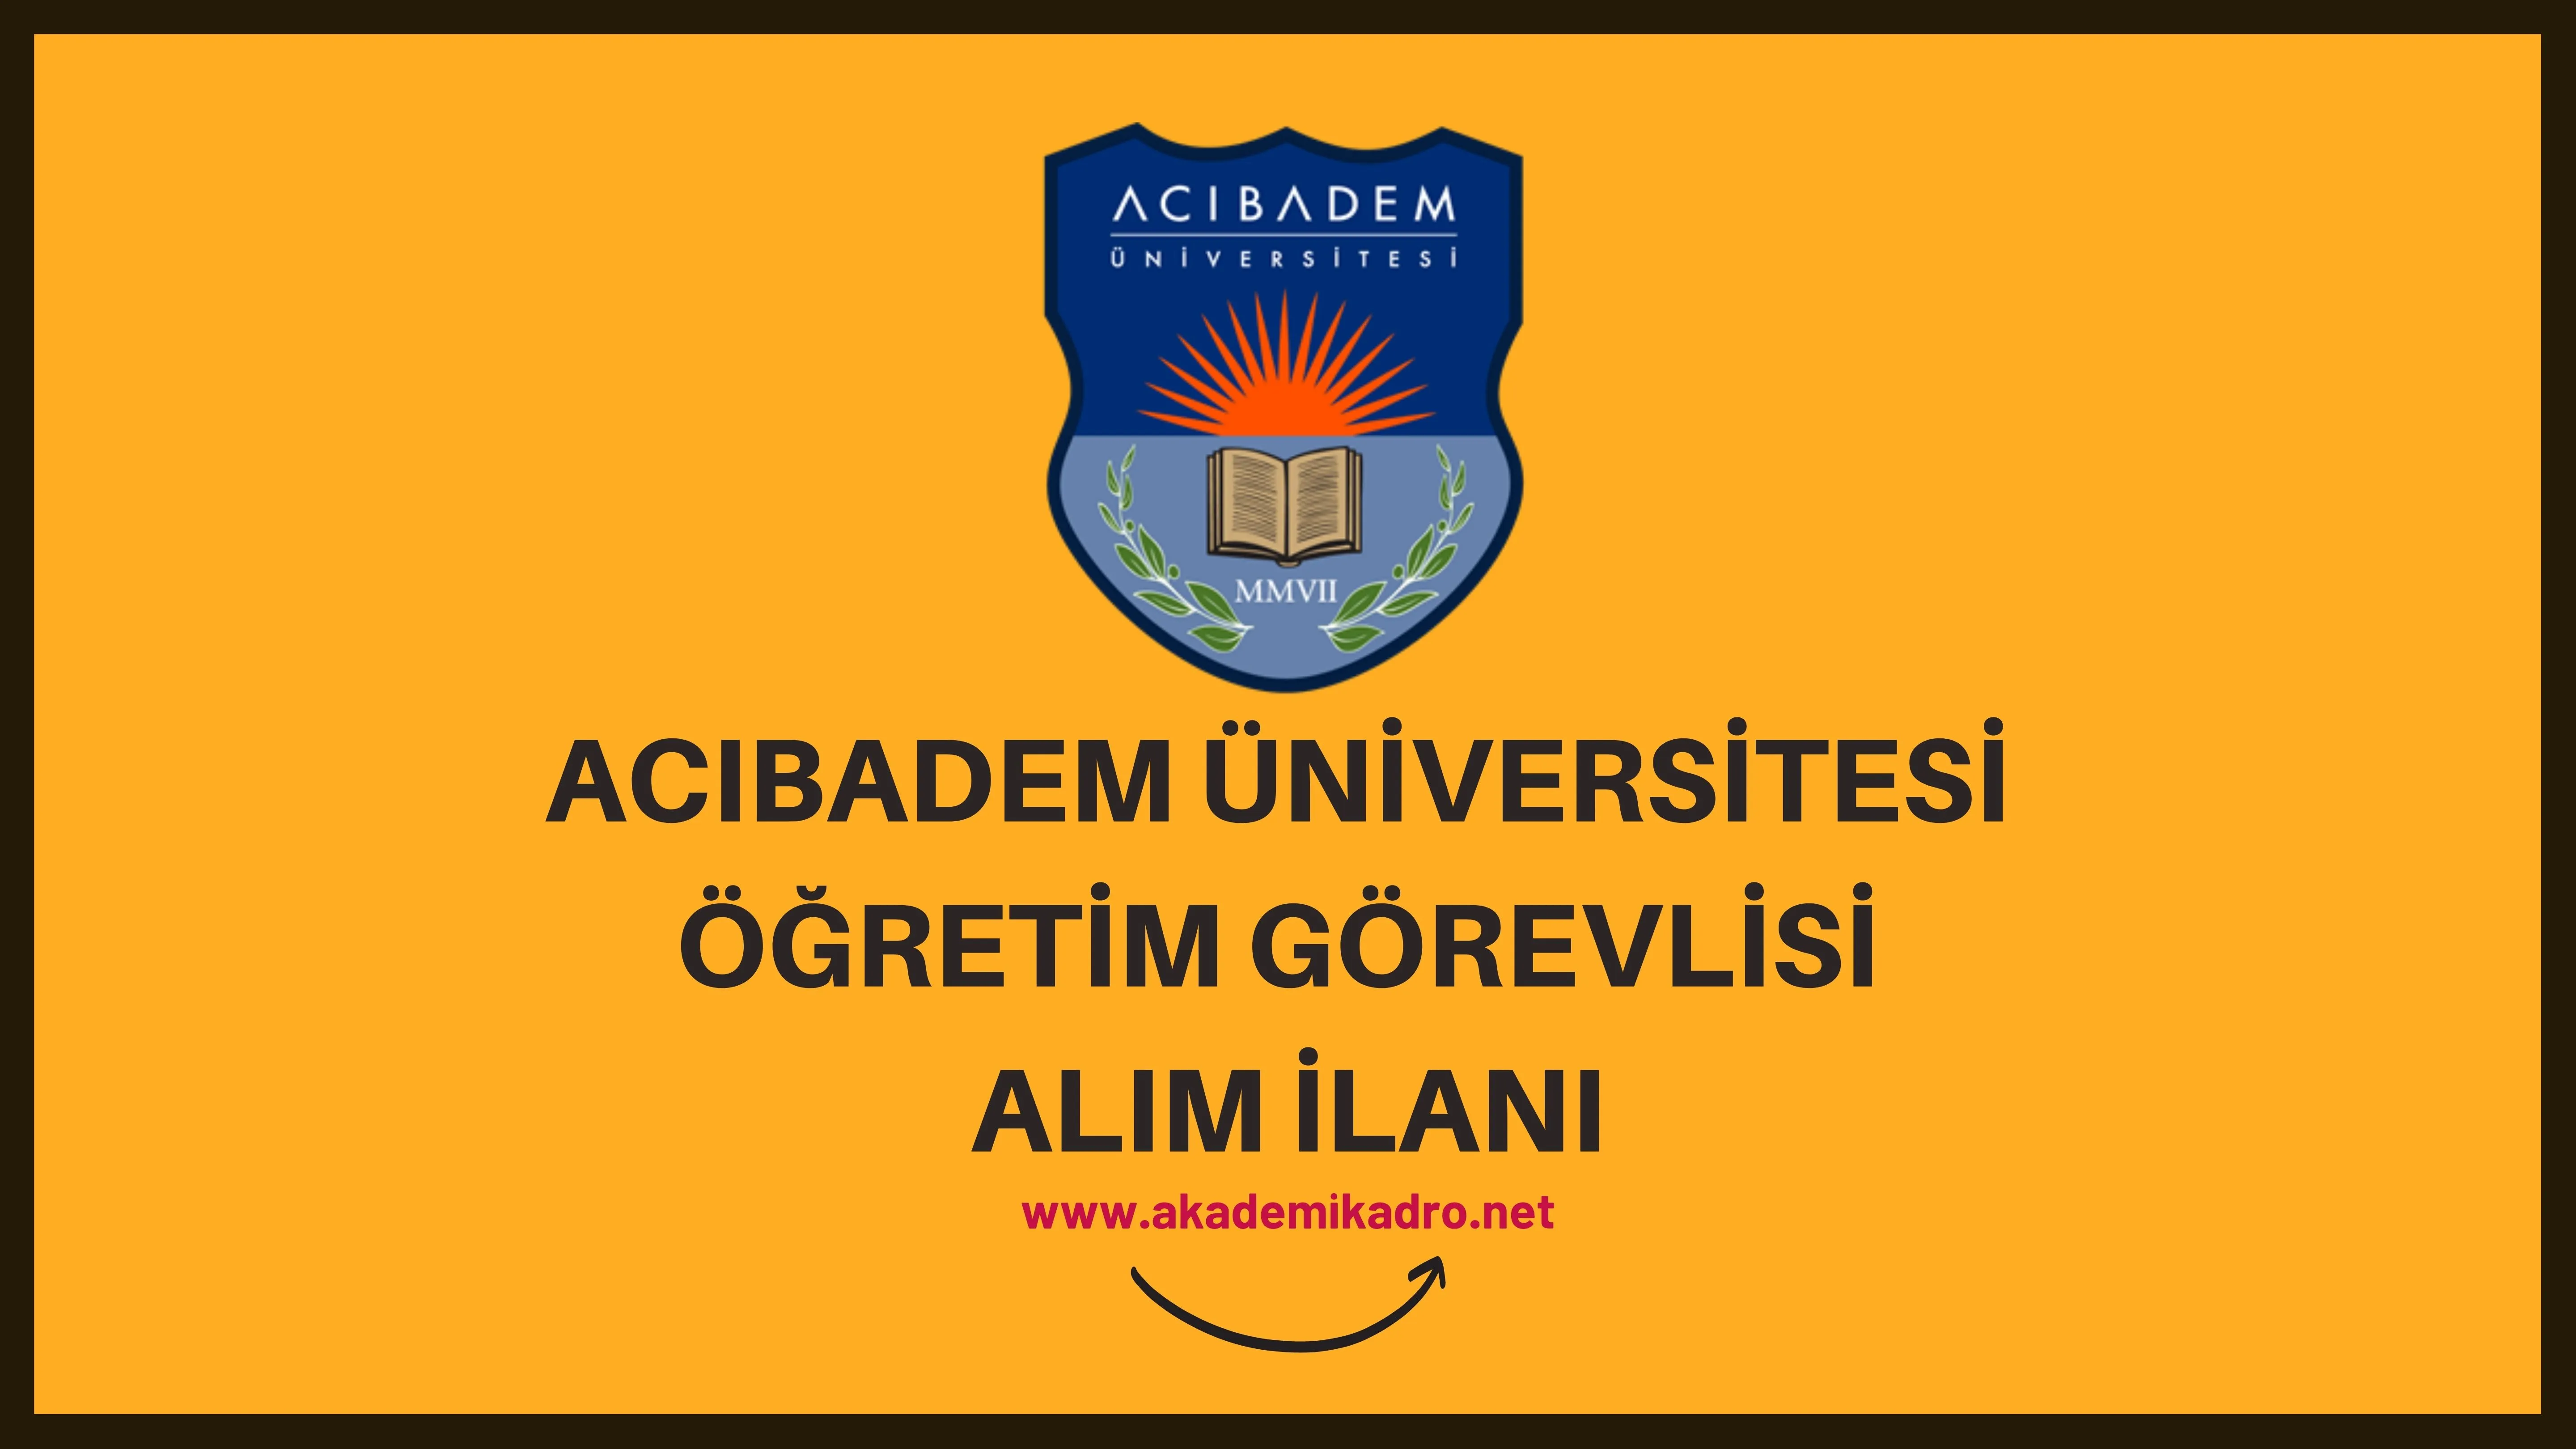 Acıbadem Mehmet Ali Aydınlar Üniversitesi 4 Öğretim Görevlisi alacaktır. Son başvuru tarihi 11 Ekim 2022